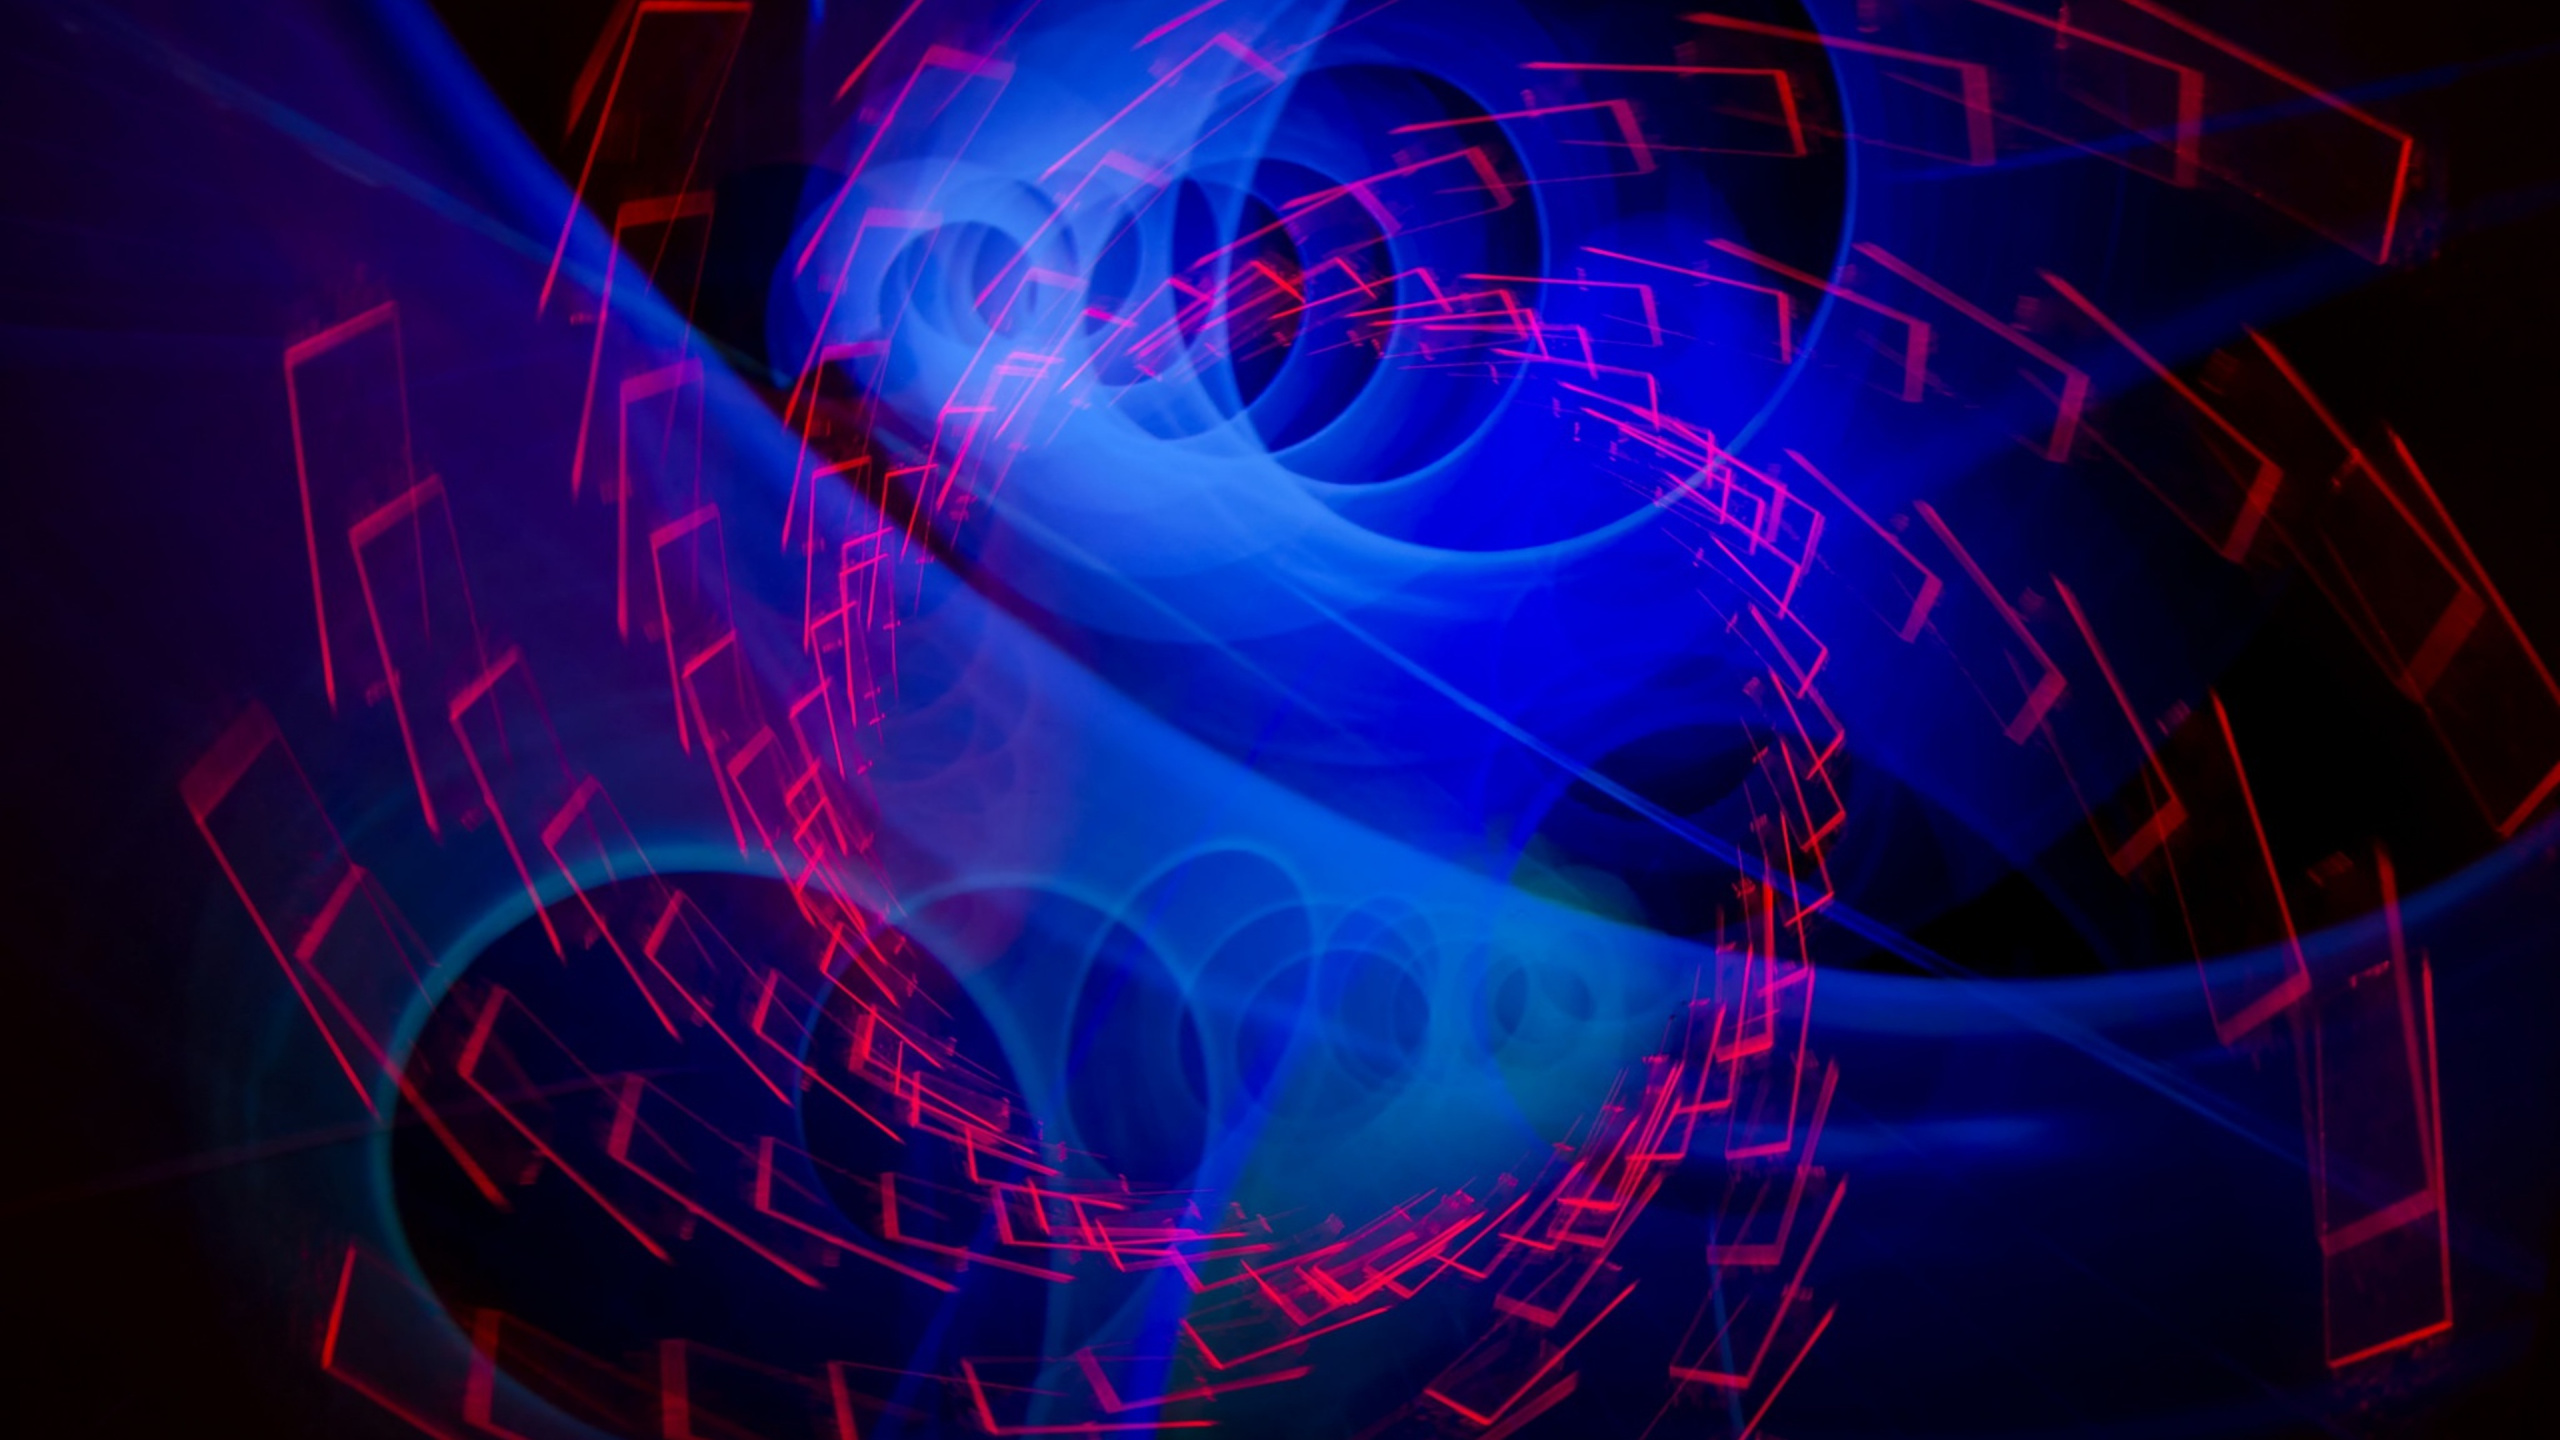 Blaues Und Rotes Licht Digitales Hintergrundbild. Wallpaper in 2560x1440 Resolution